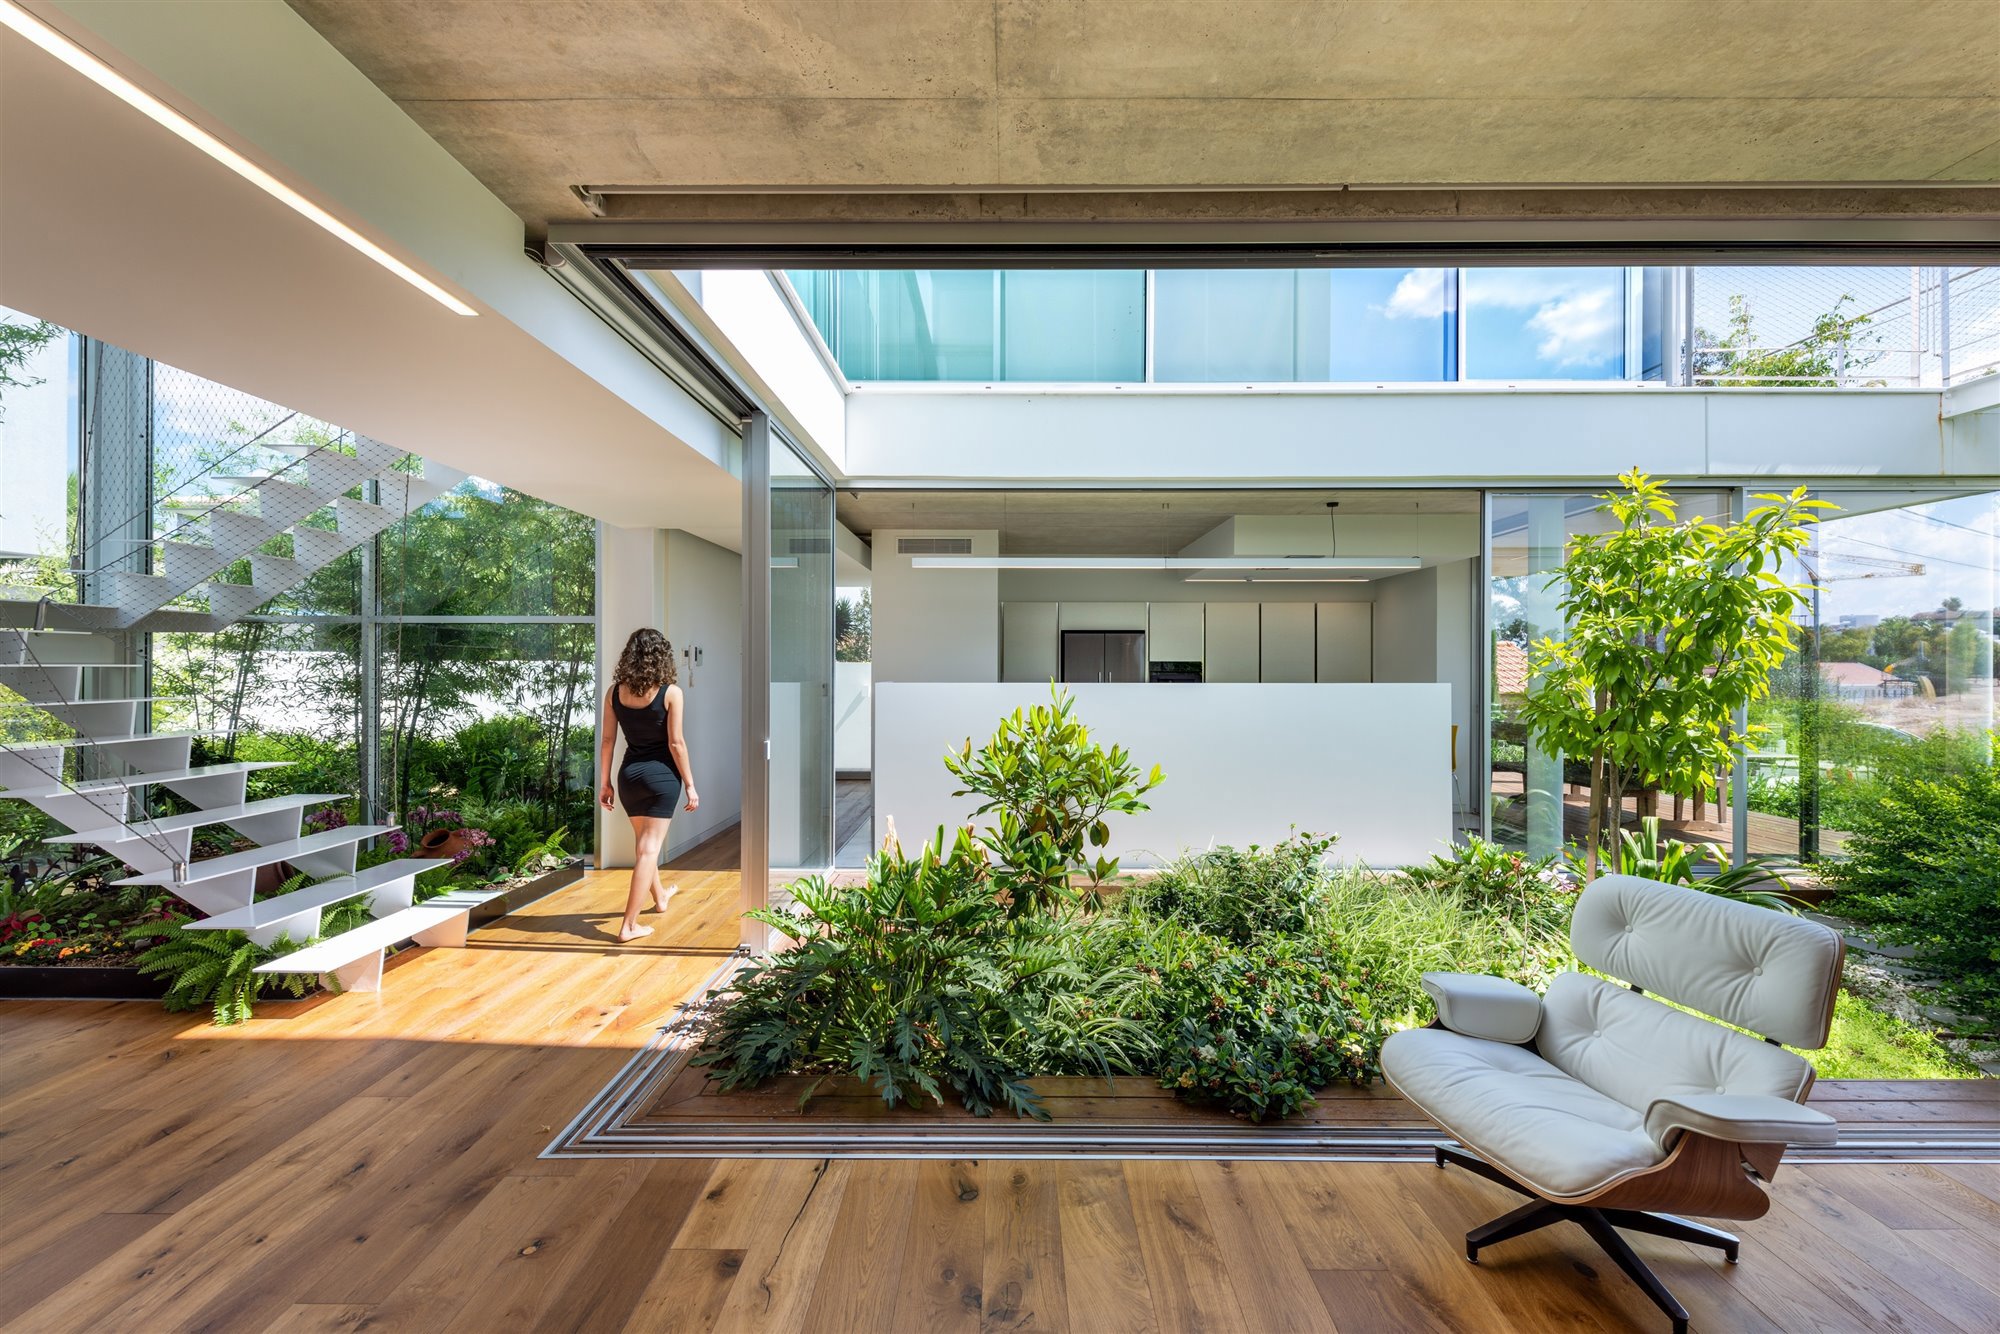 Casa moderna con patio interior con plantas y una butaca color gris claro.